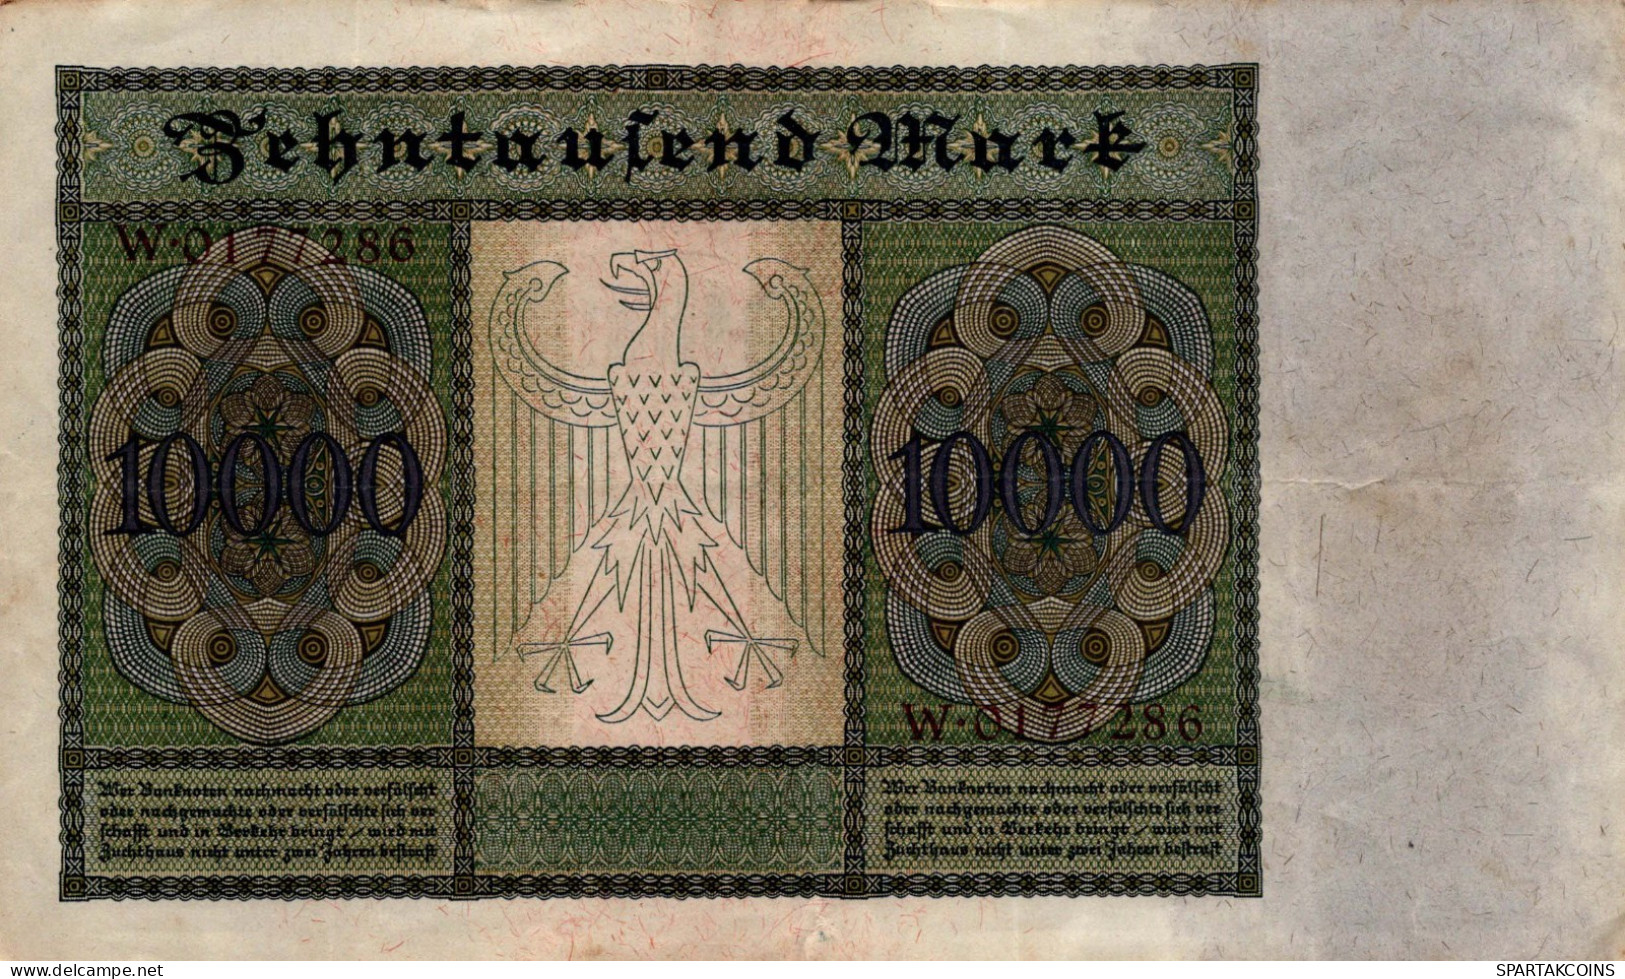 10000 MARK 1922 Stadt BERLIN DEUTSCHLAND Papiergeld Banknote #PL329 - [11] Local Banknote Issues